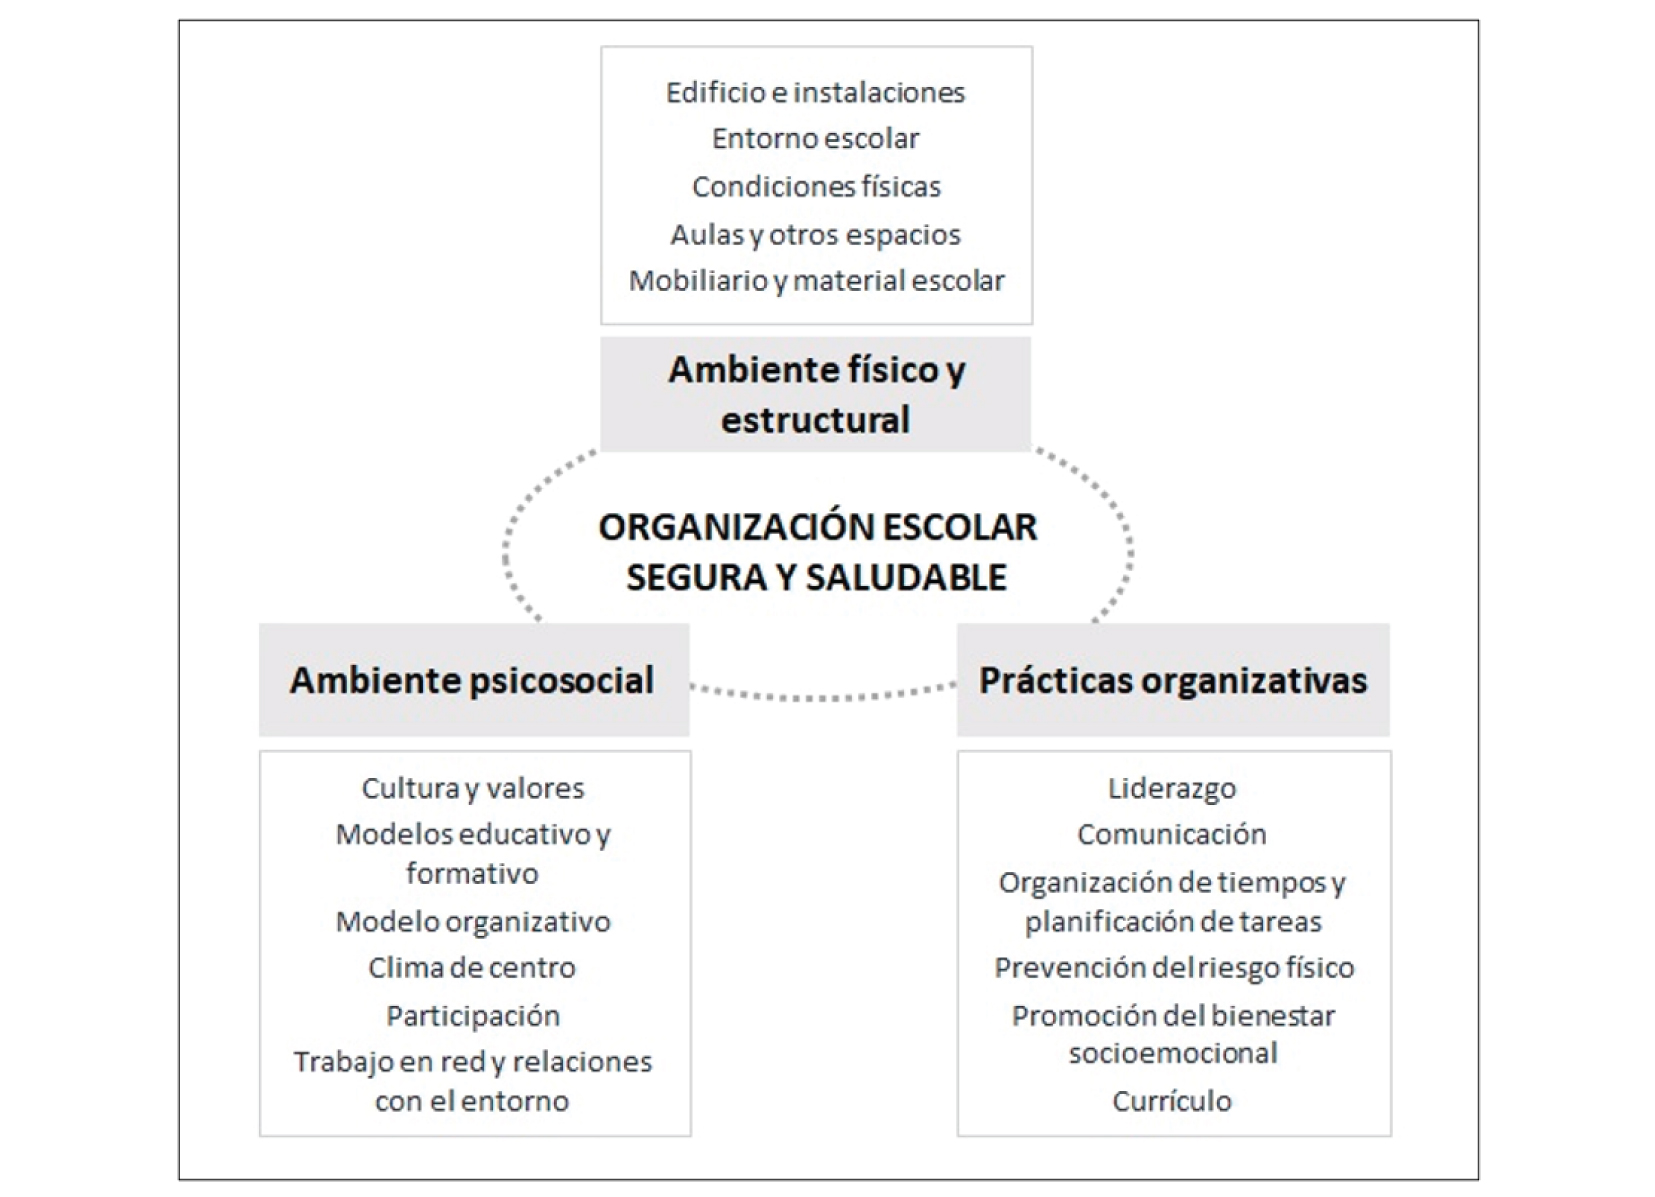 Modelo de la organización escolar segura y saludable (Gairín y Díaz-Vicario, 2019, p. 3)